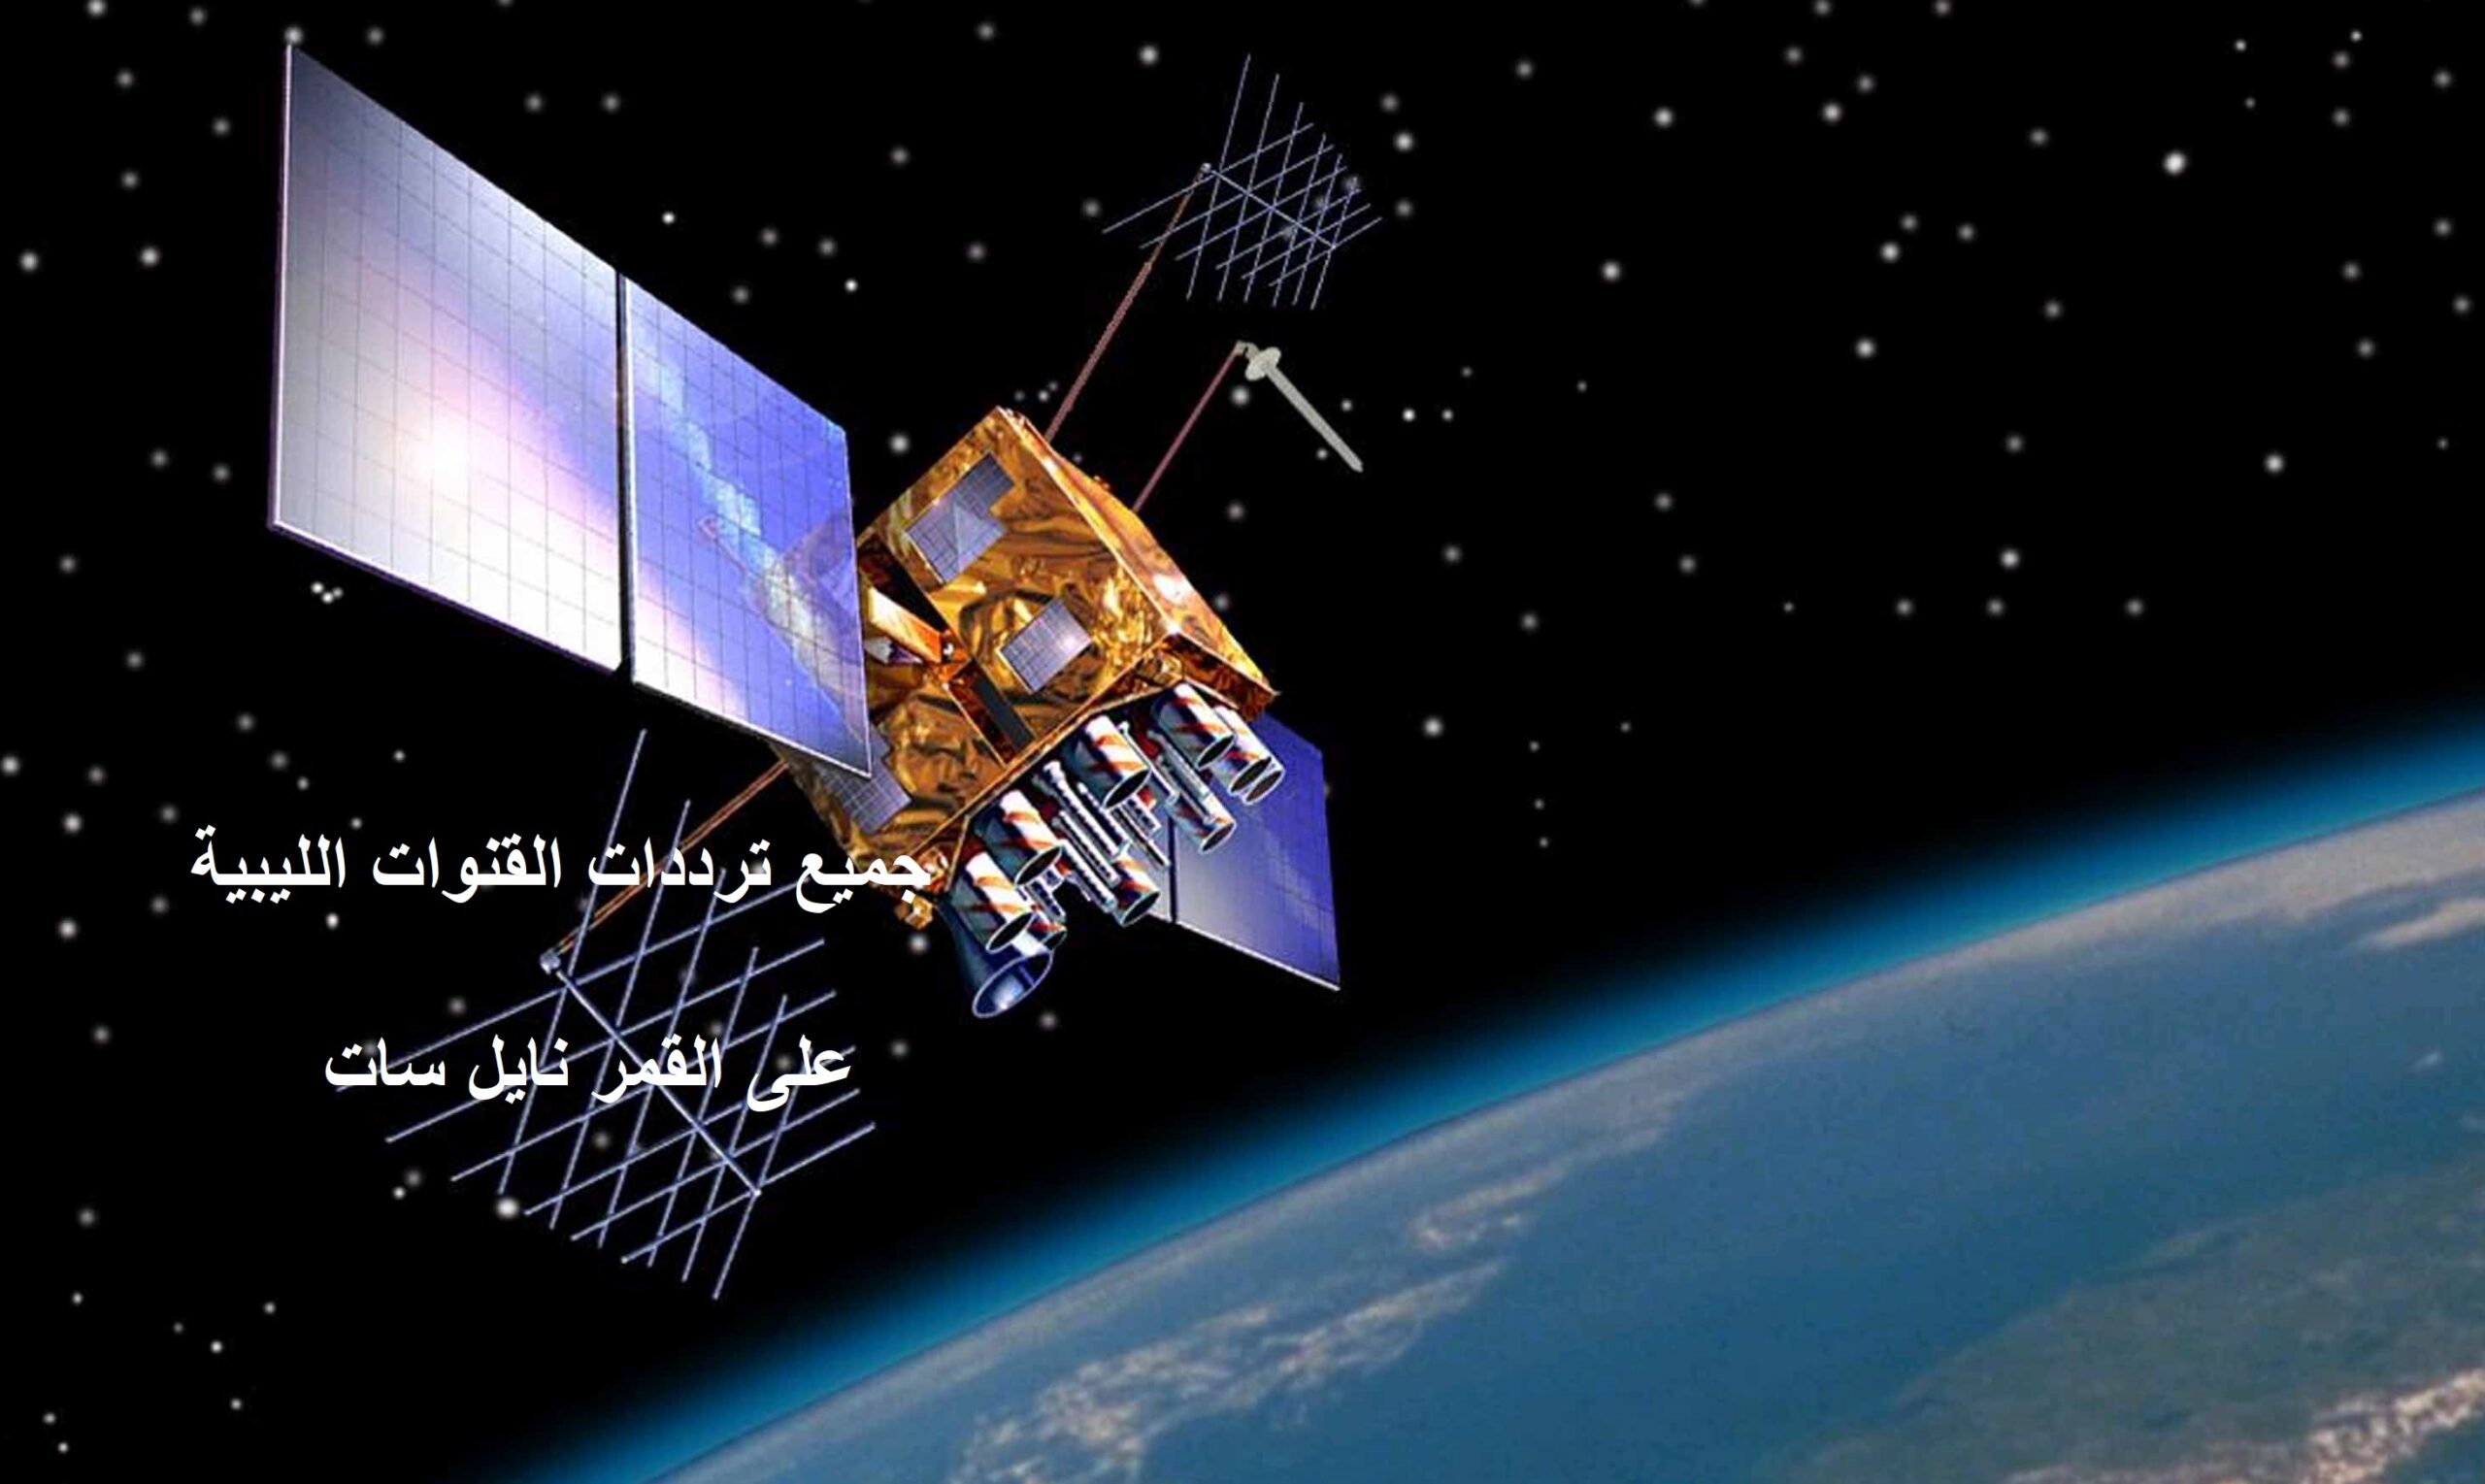 جميع ترددات القنوات الليبية الإخبارية والرياضية والمنوعات “مارس 2020” بانوراما على نايل سات